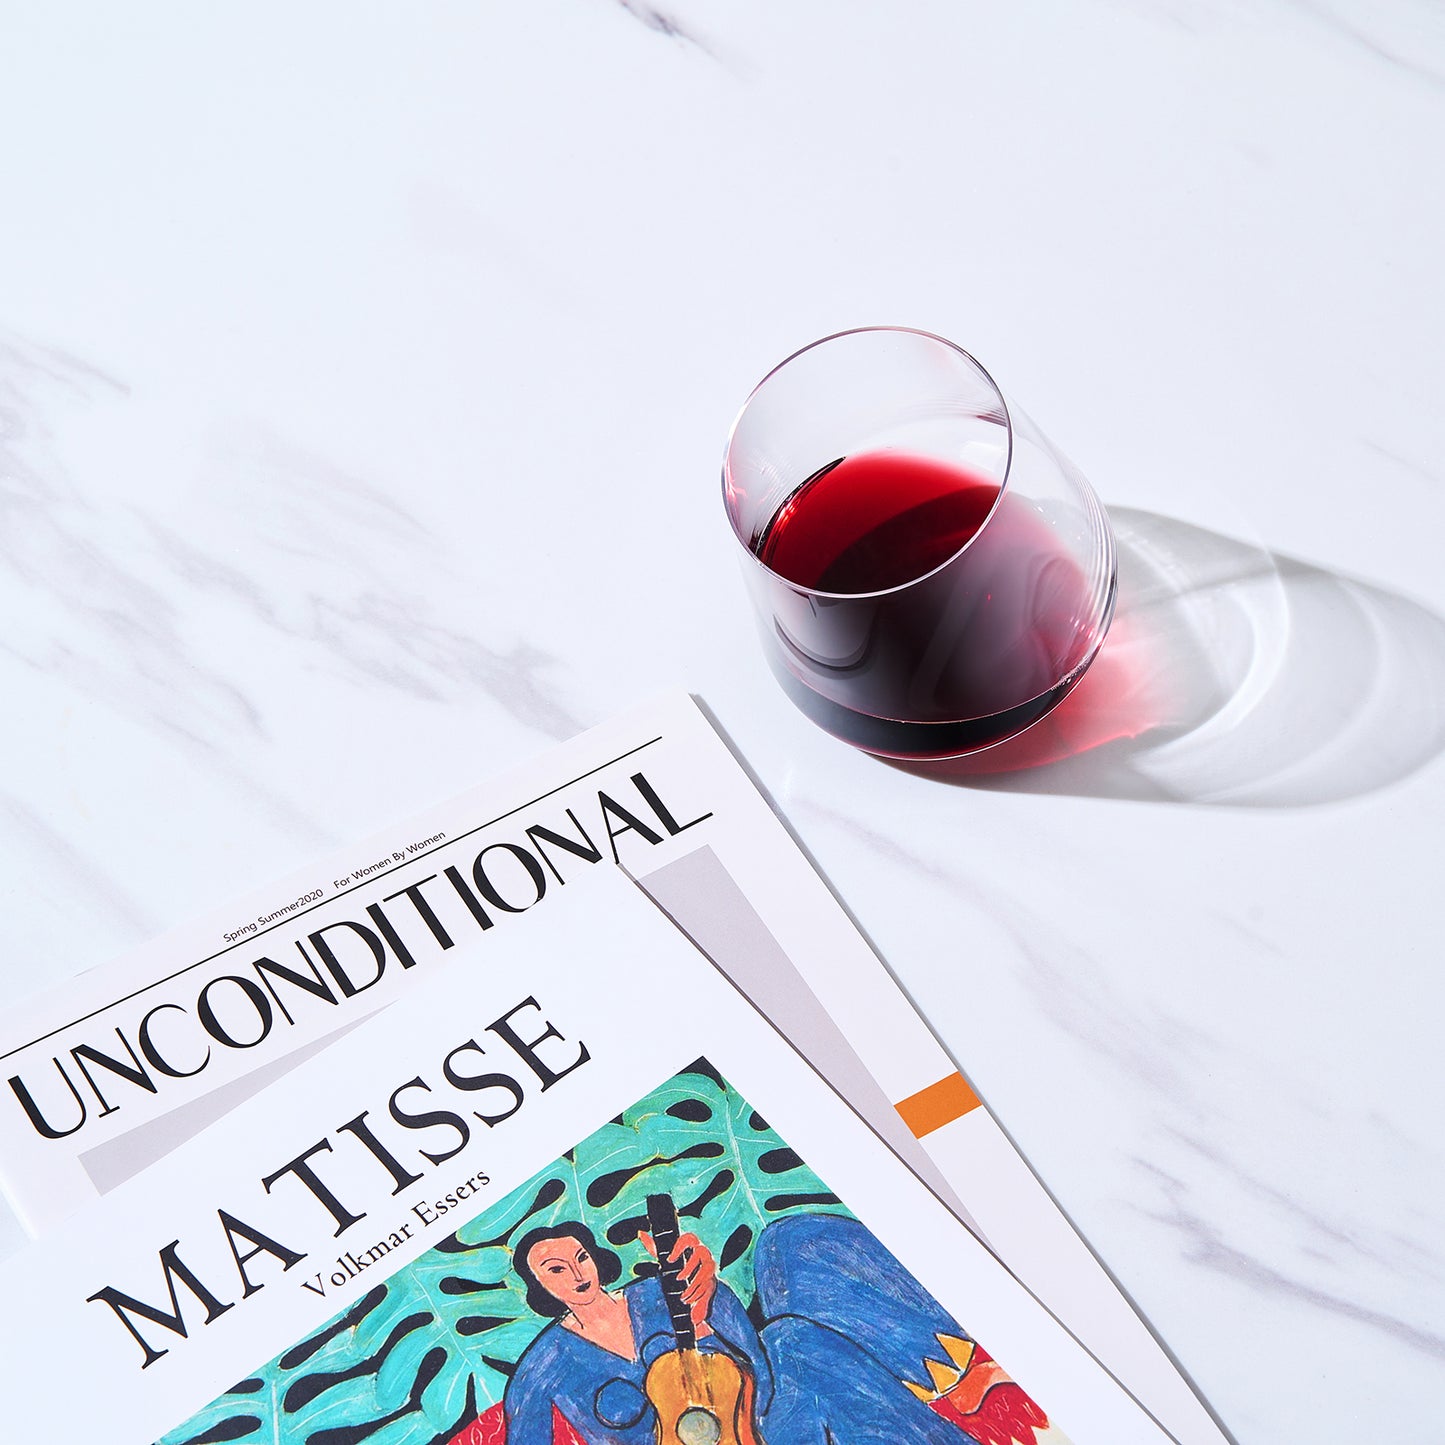 Classica Un-Spillable Wine Glassware, Single Set